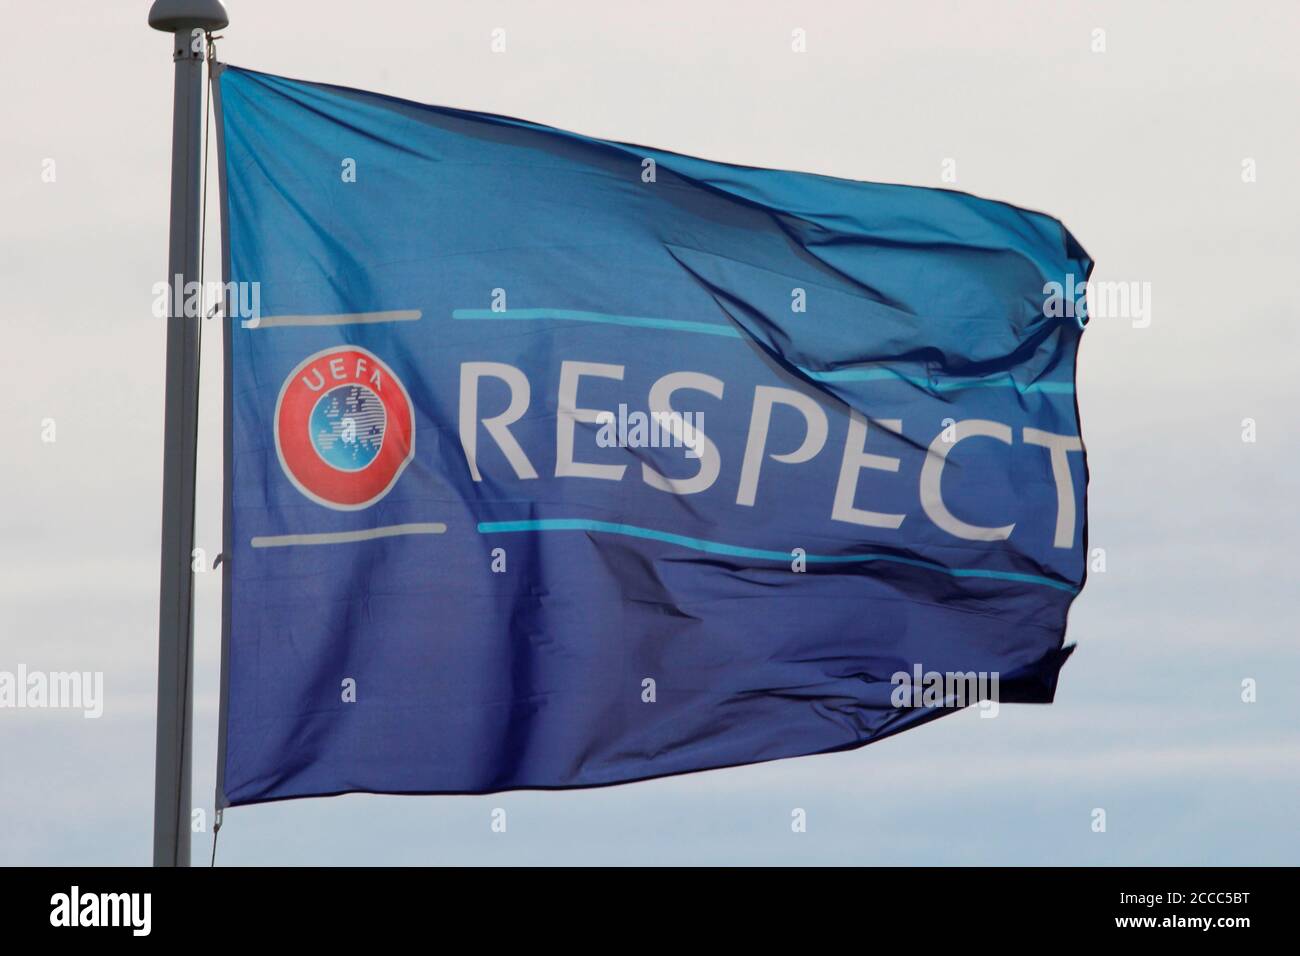 La campaña de respeto de la UEFA contra el racismo y para promover el trabajo hacia la unidad y el respeto a través del género, la raza, la religión y la habilidad Foto de Tony Henshaw Foto de stock